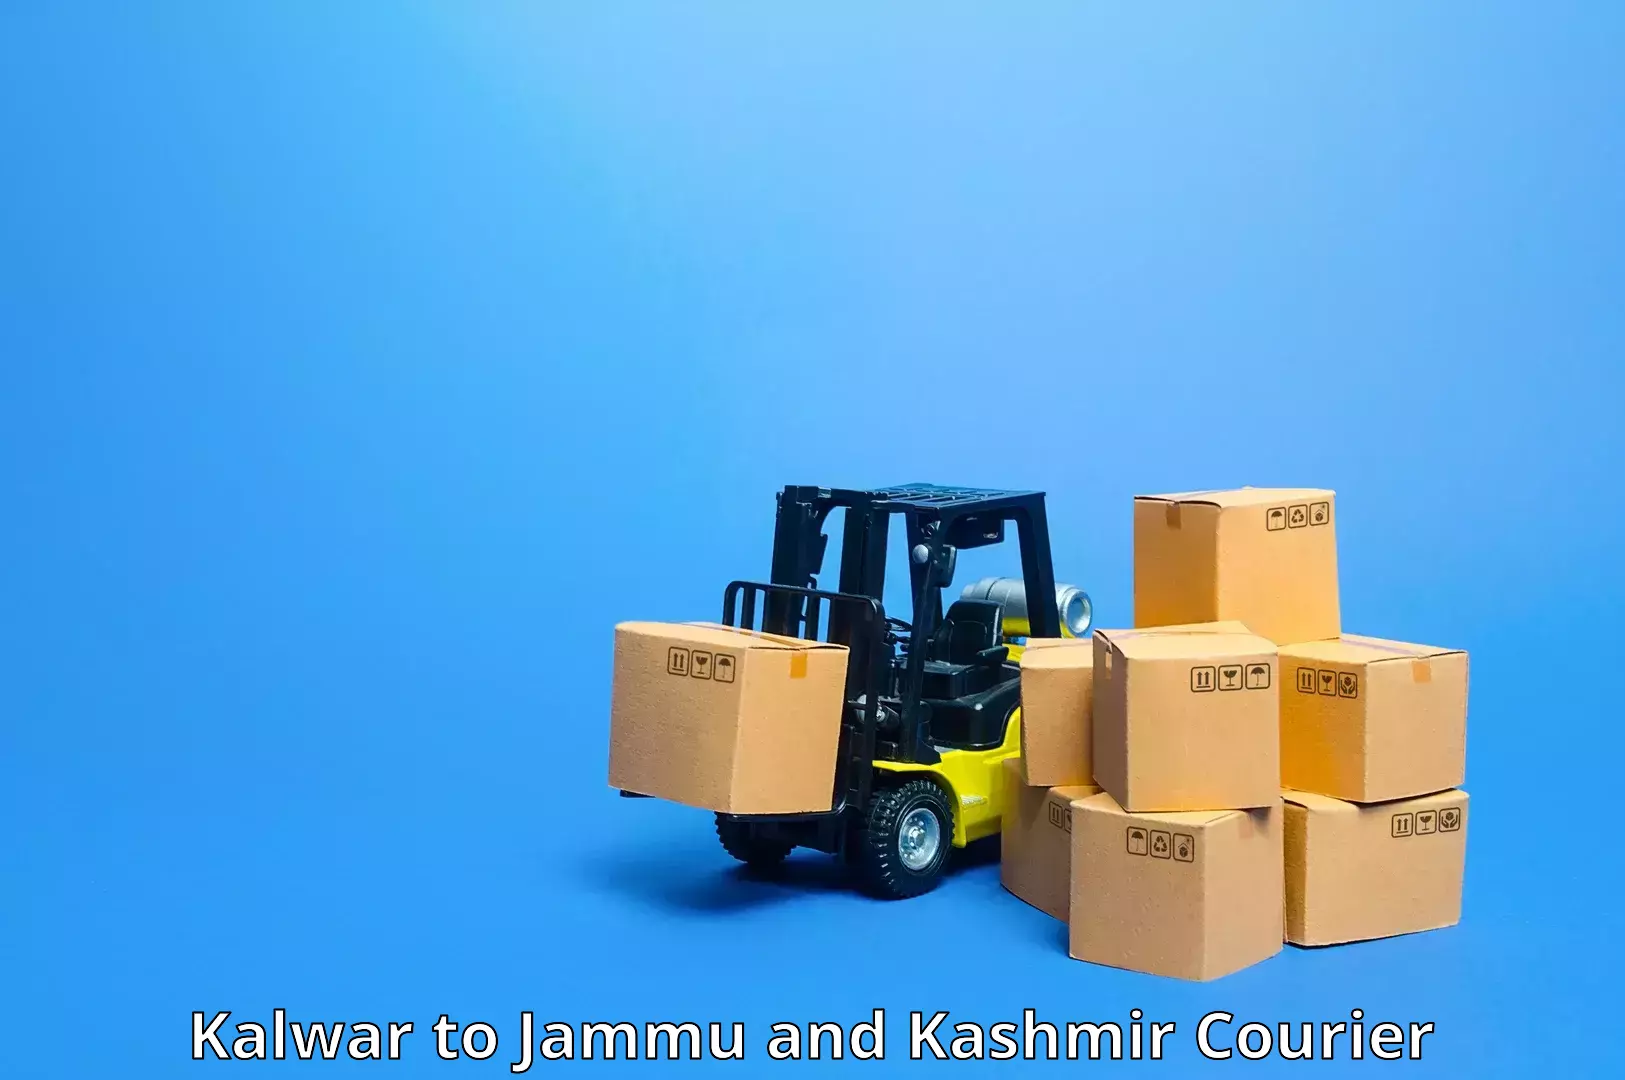 High-speed parcel service Kalwar to Kupwara